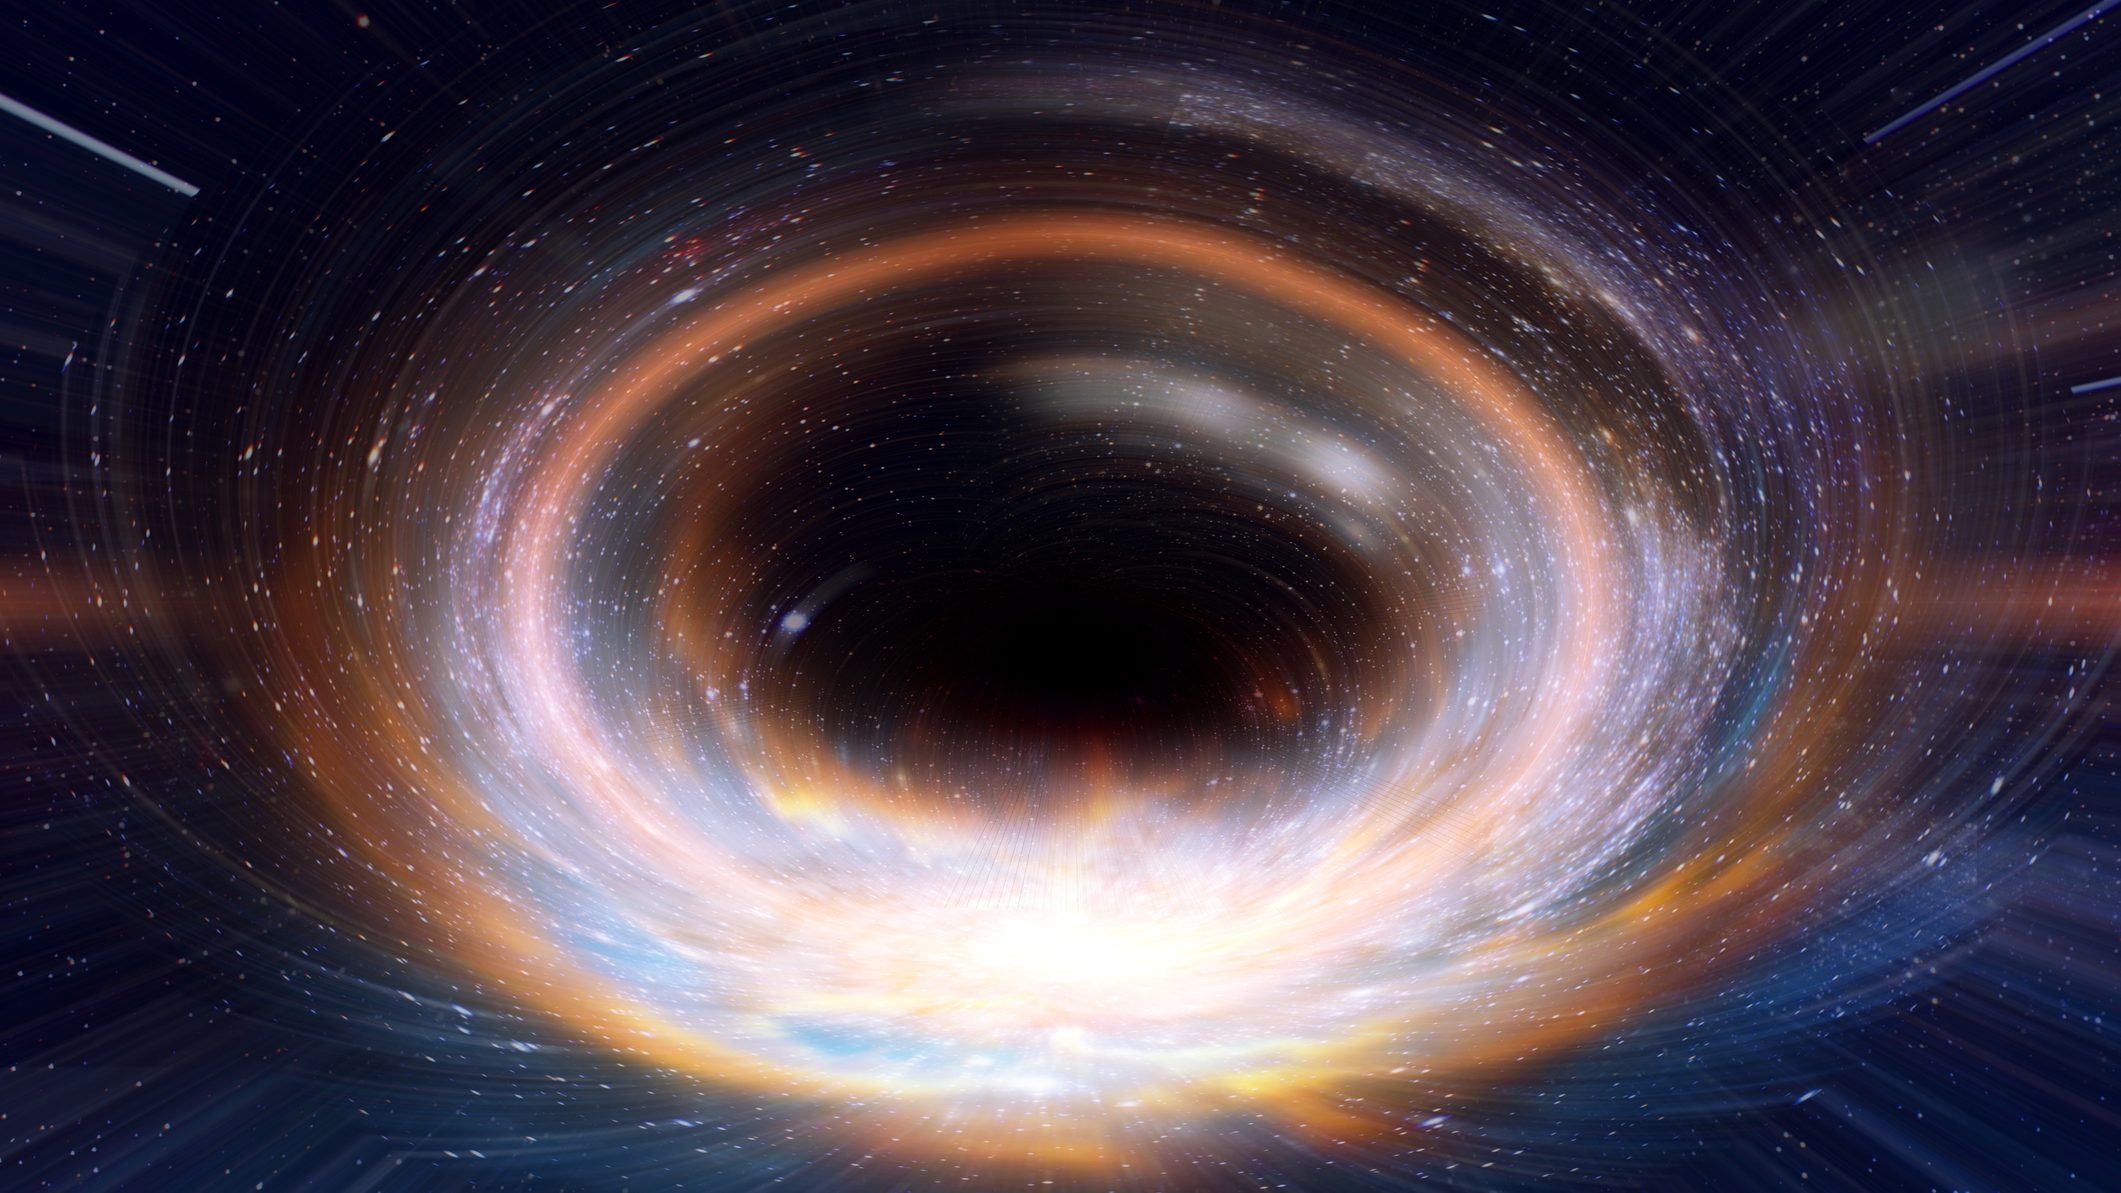 Le trou noir de la galaxie M87 révèle son magnétisme – DAILY SCIENCE